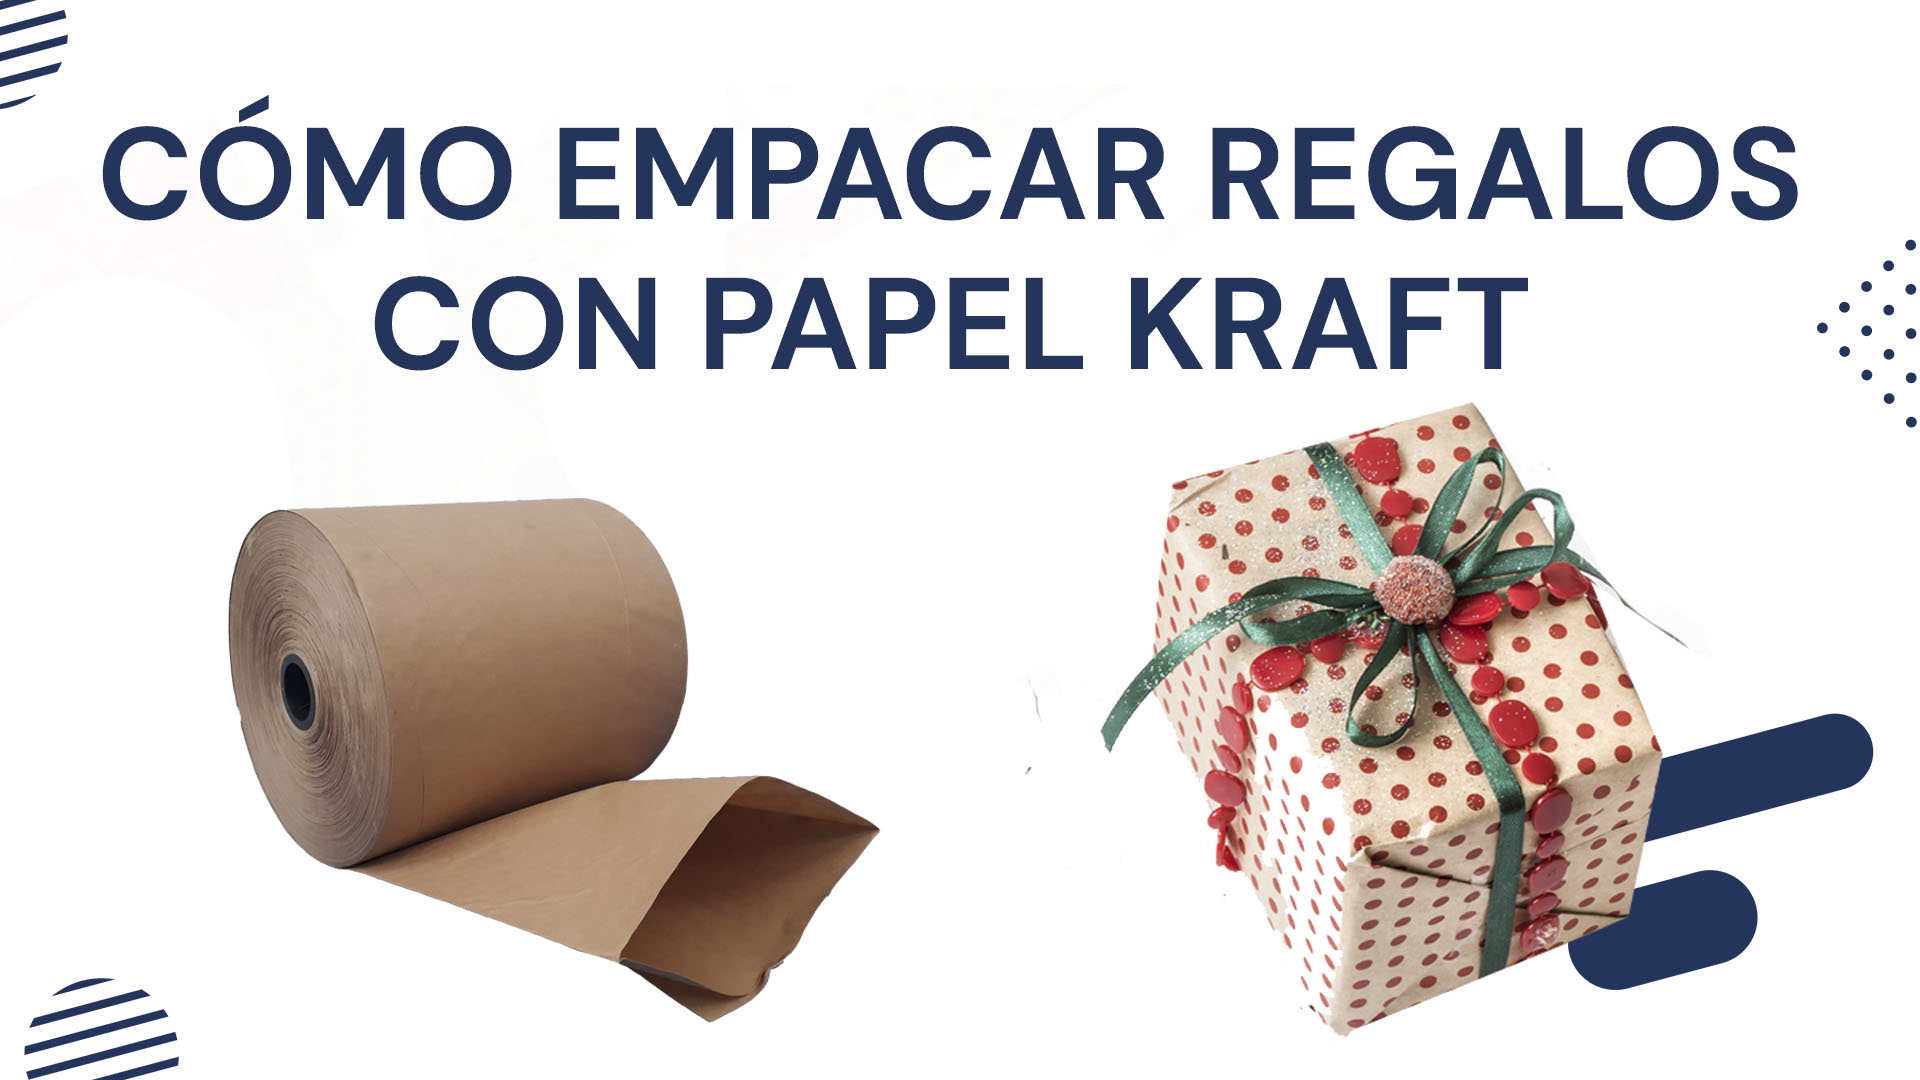 Cómo empacar regalos con papel Kraft